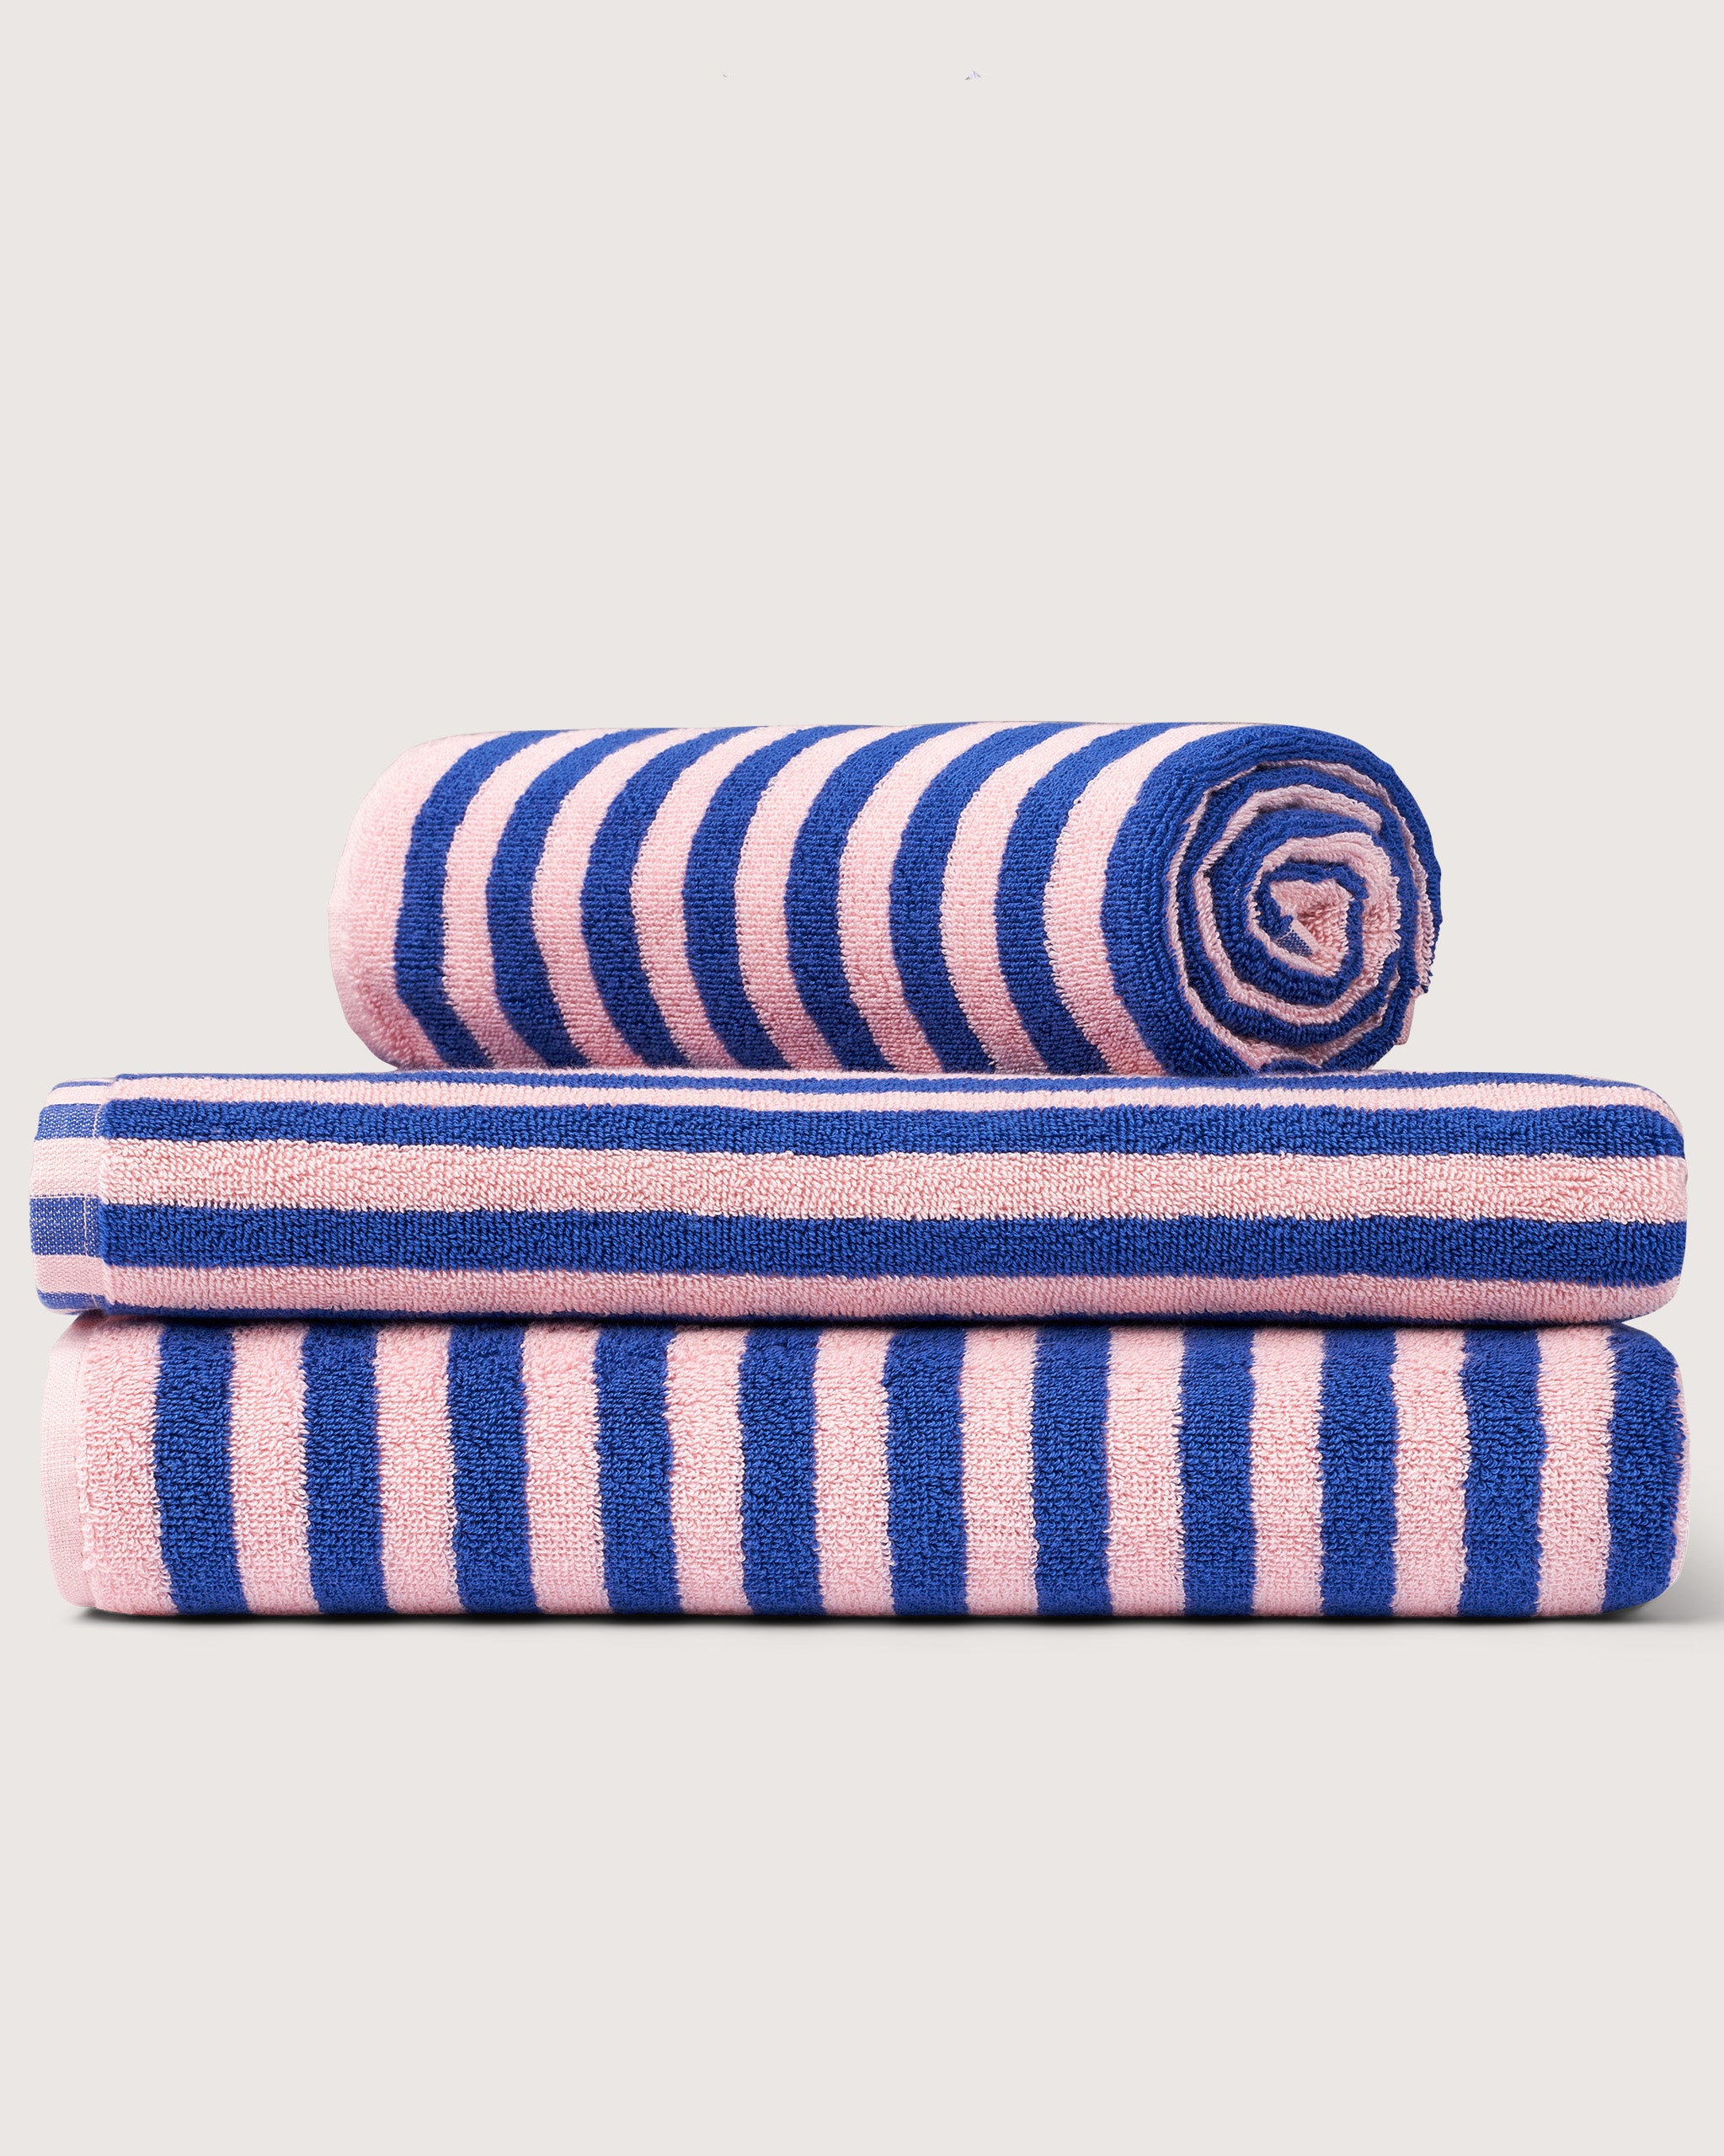 Bongusta, Product image, Naram håndklæder, dazzling blue & rose, 6 of 6}